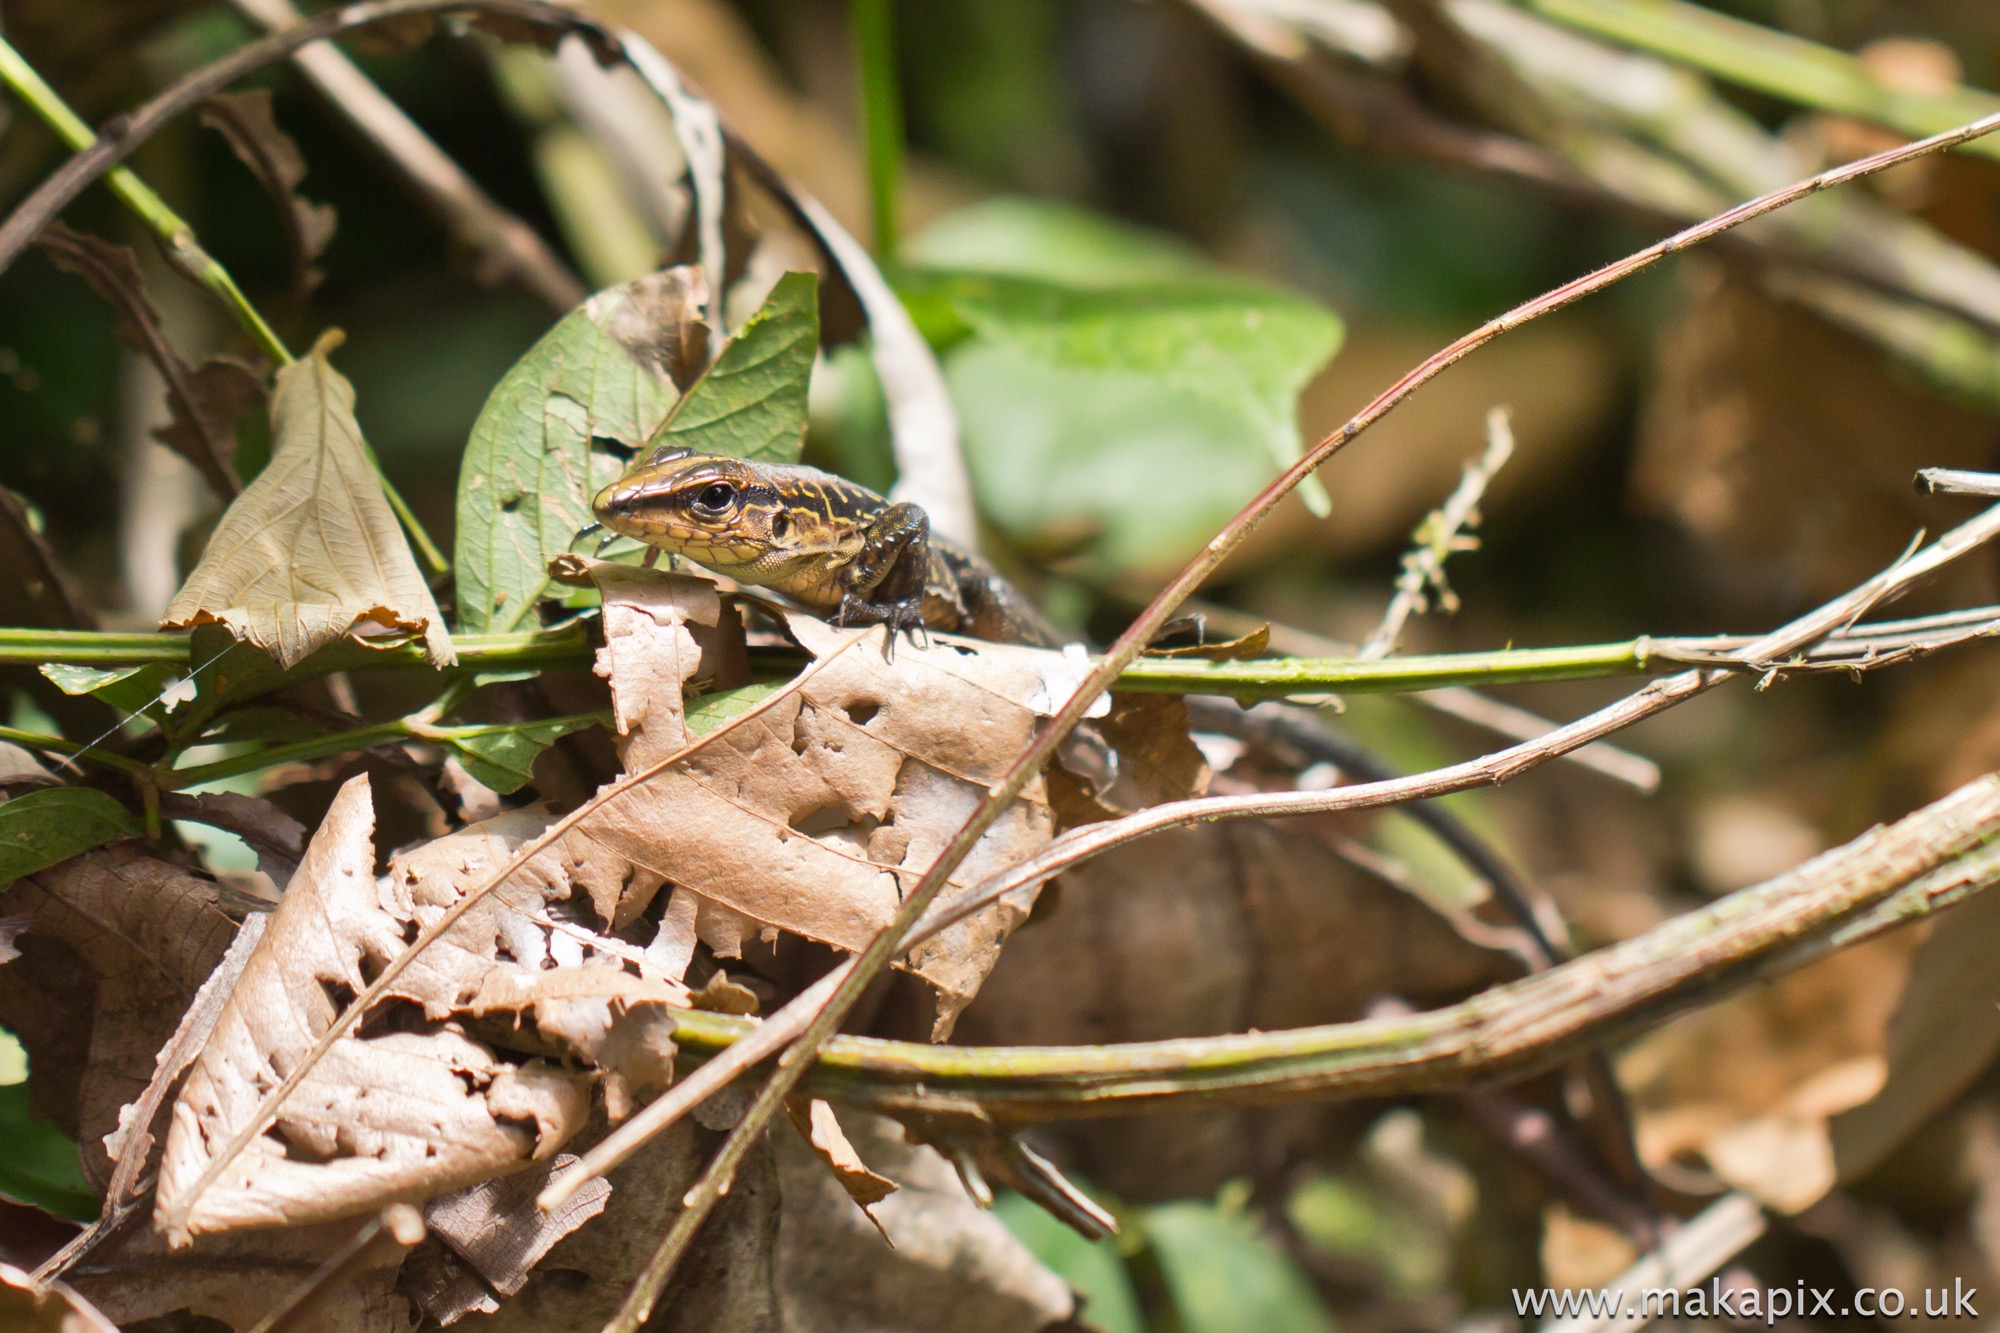 Lizard, Costa Rica